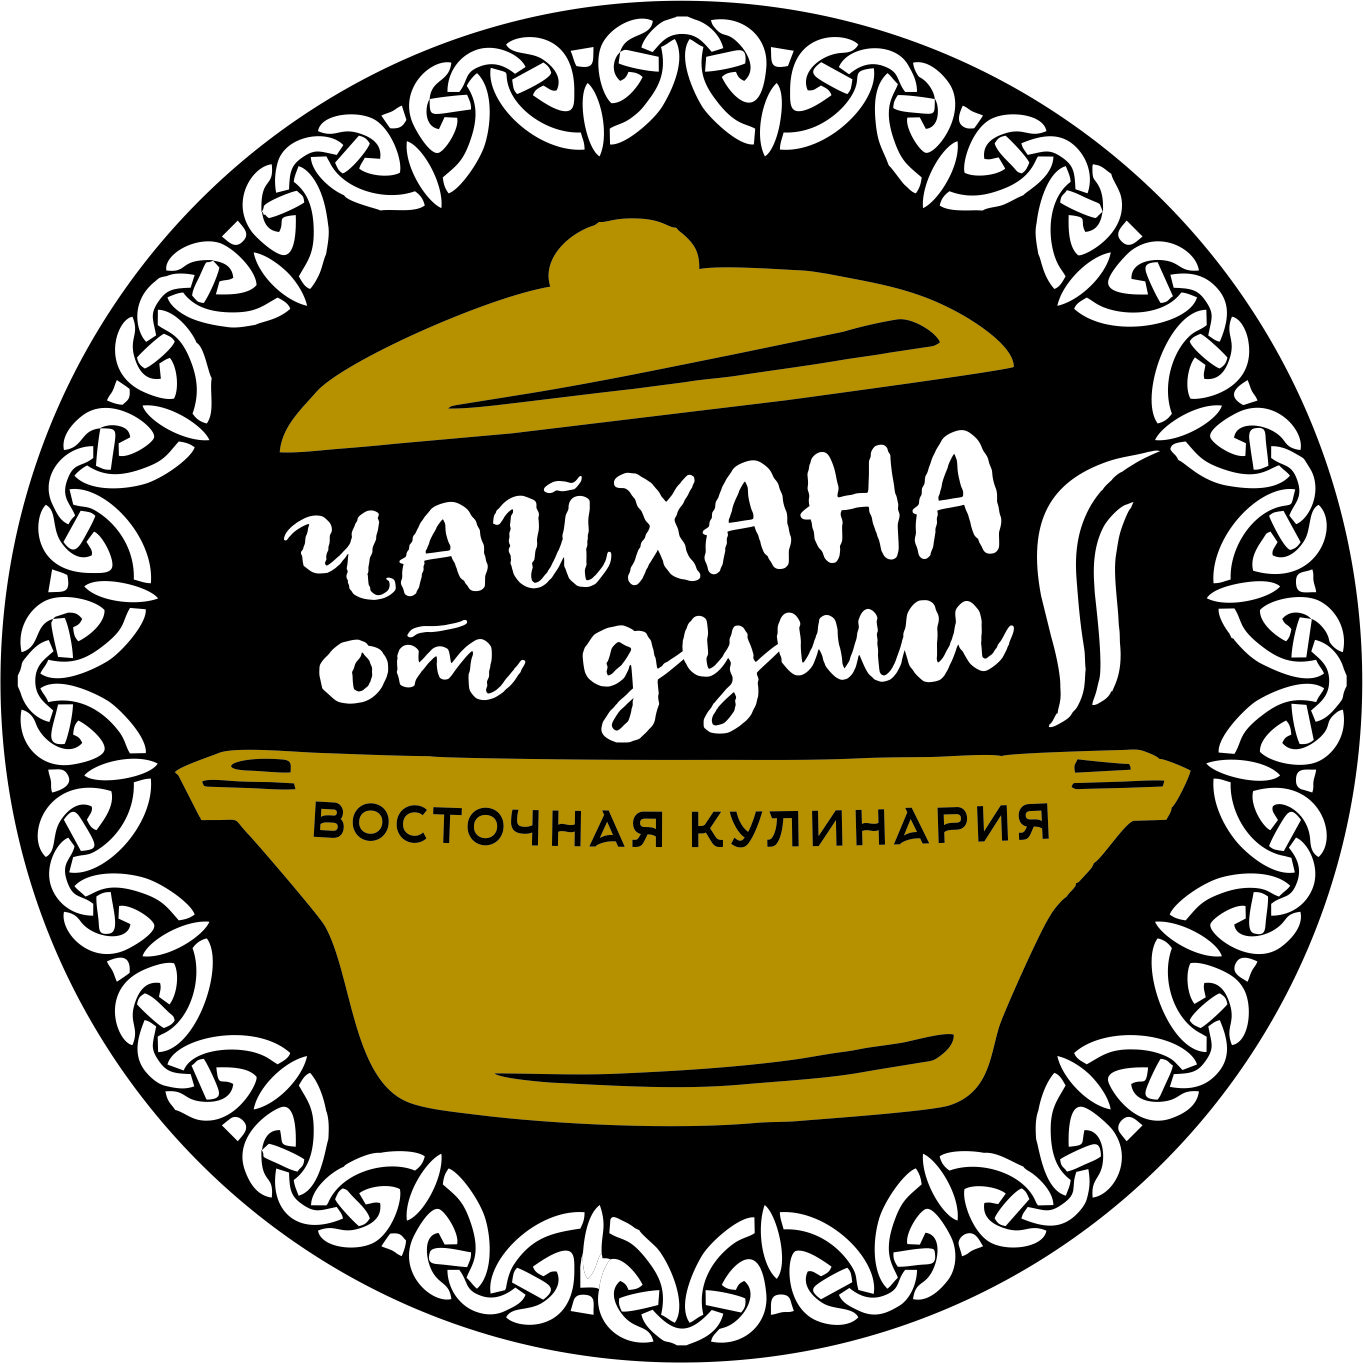 Восточный слоган. Чайхана логотип. Чайхана #1 логотип Москва. Придумать логотип для Чайханы. Чайхана Уральская 1а.